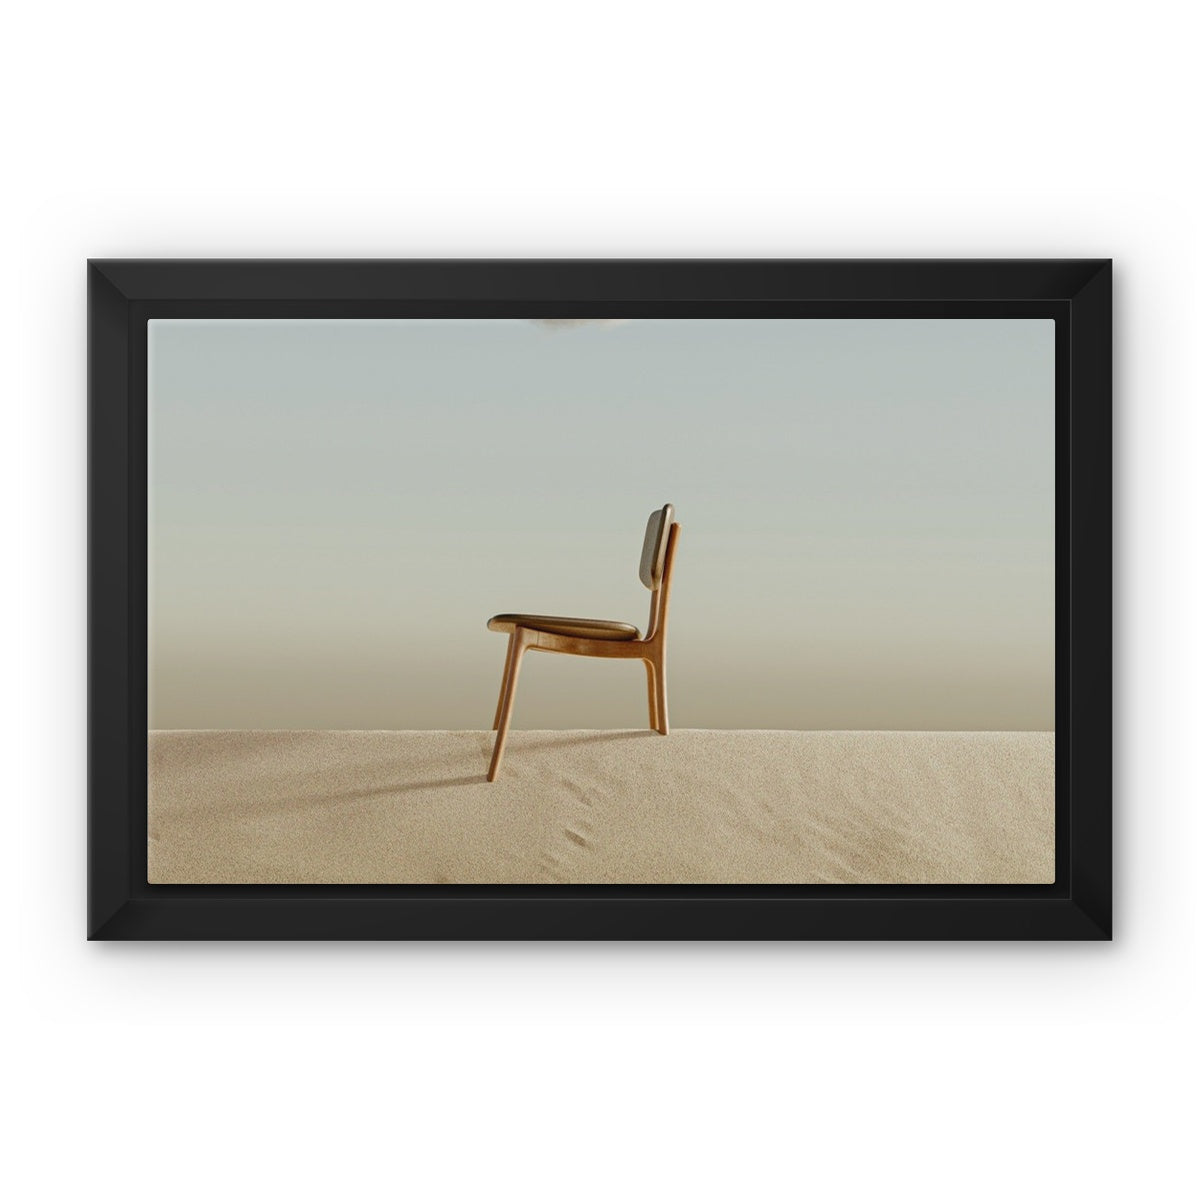 silla del desierto